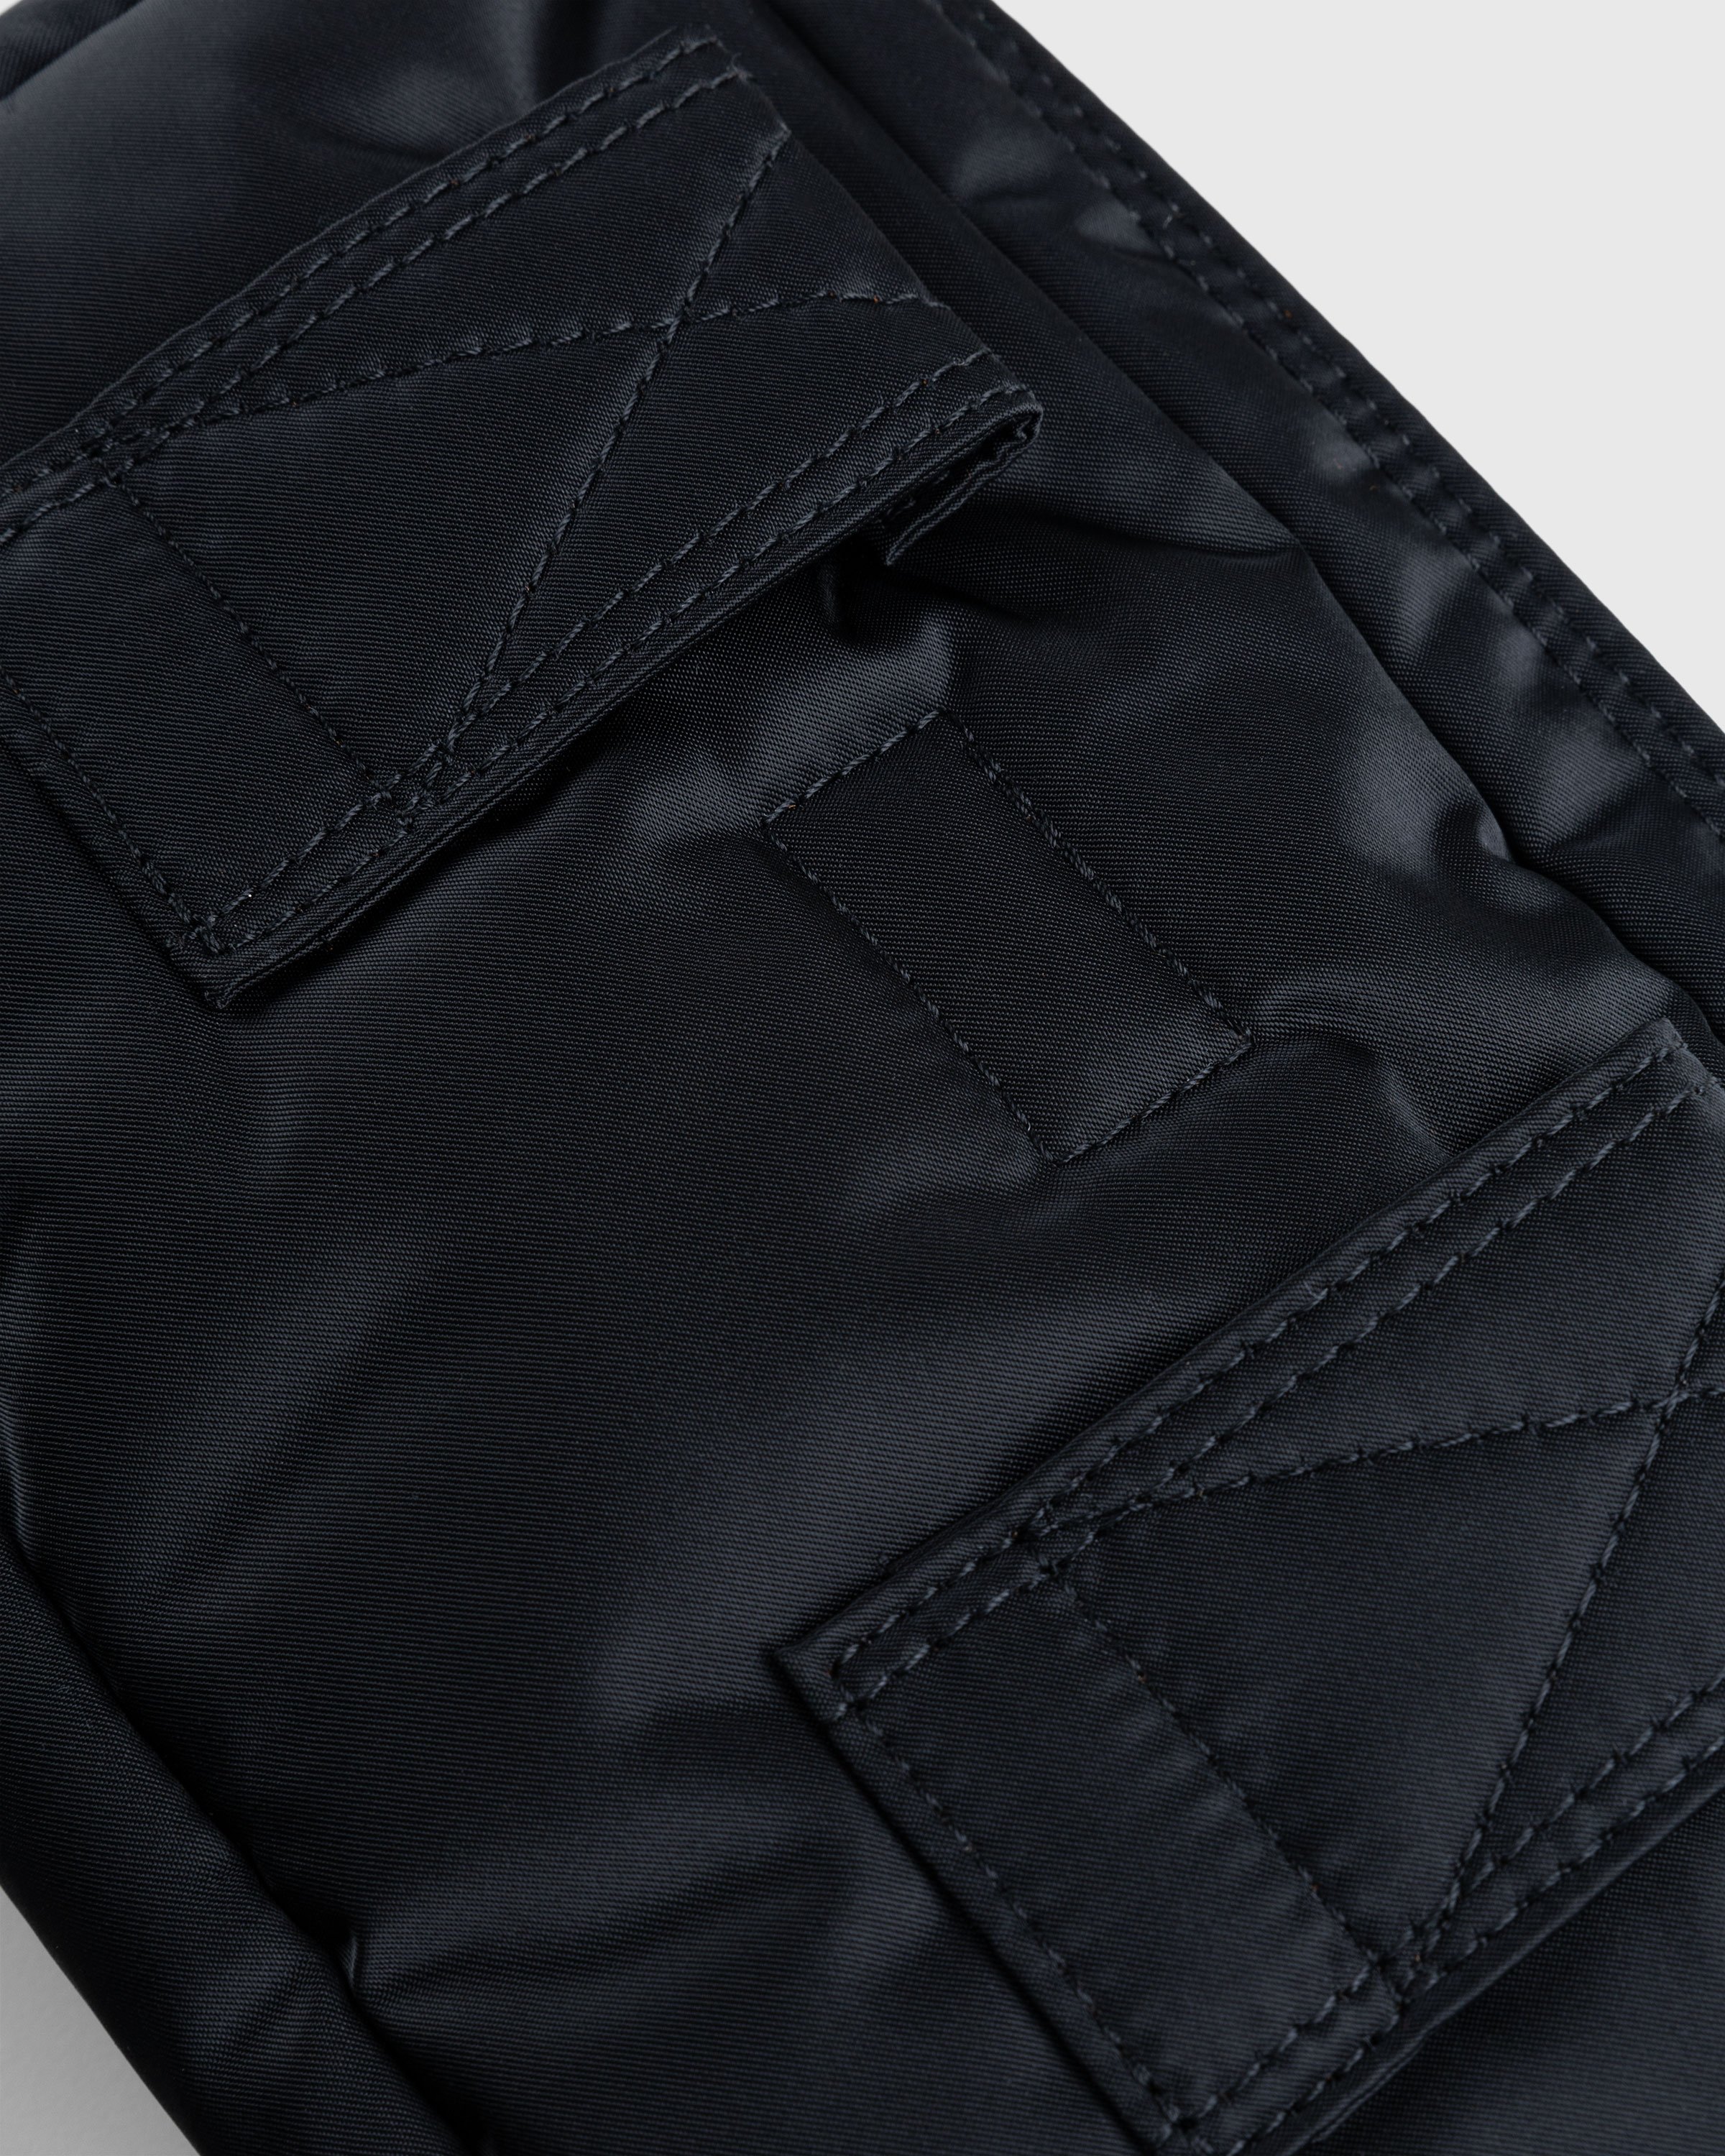 Porter-Yoshida & Co. - Tanker Shoulder Bag Black - Accessories - Black - Image 3